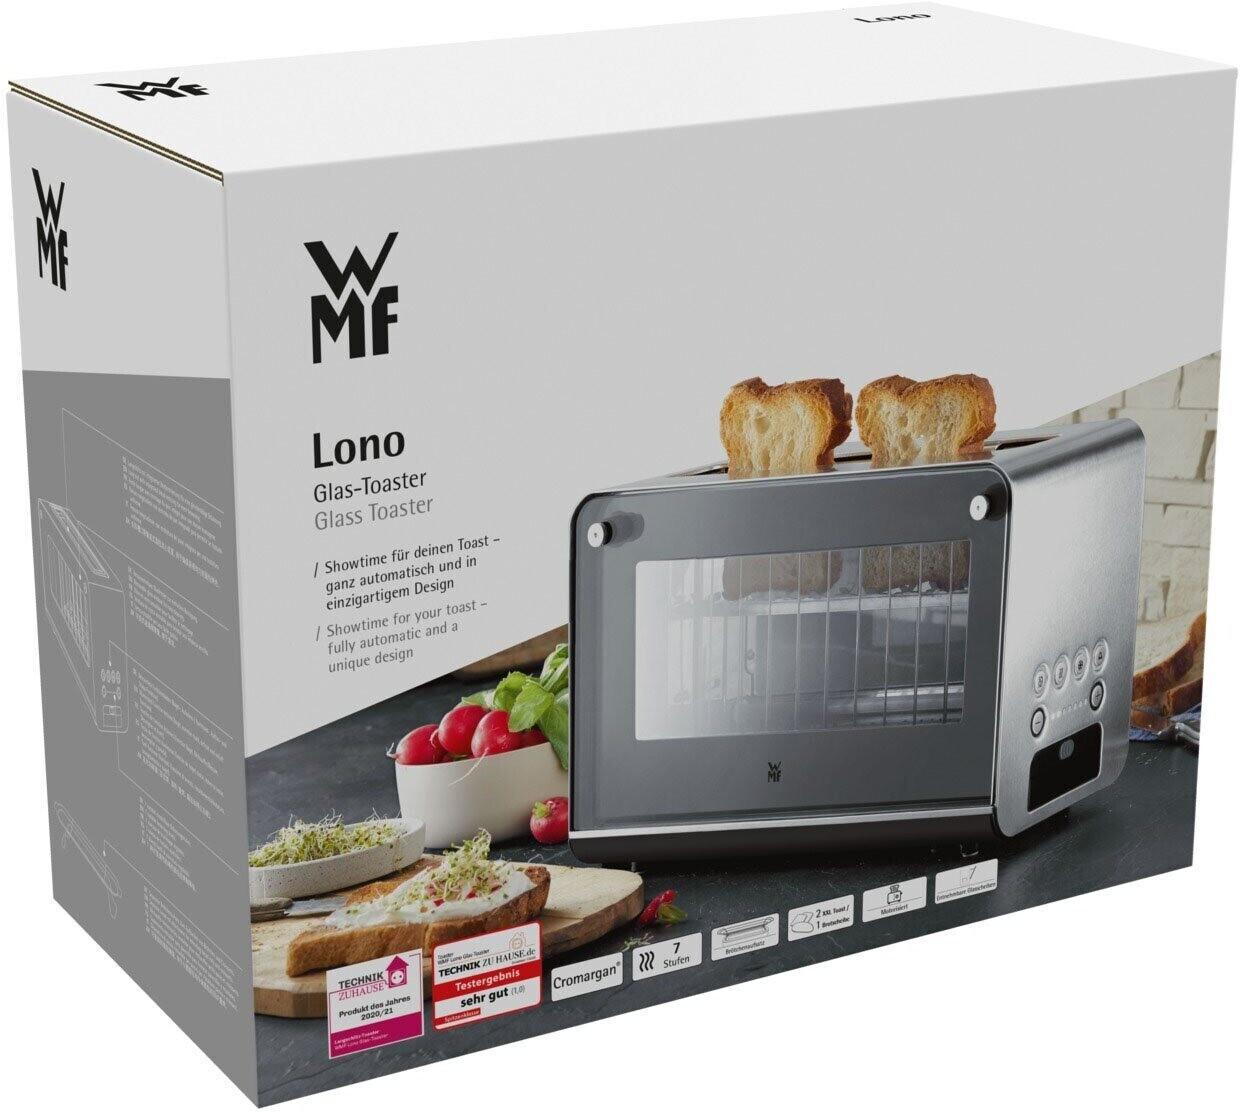 WMF Preisvergleich Lono Preise) € (Februar bei | ab Glas-Toaster 2024 158,99